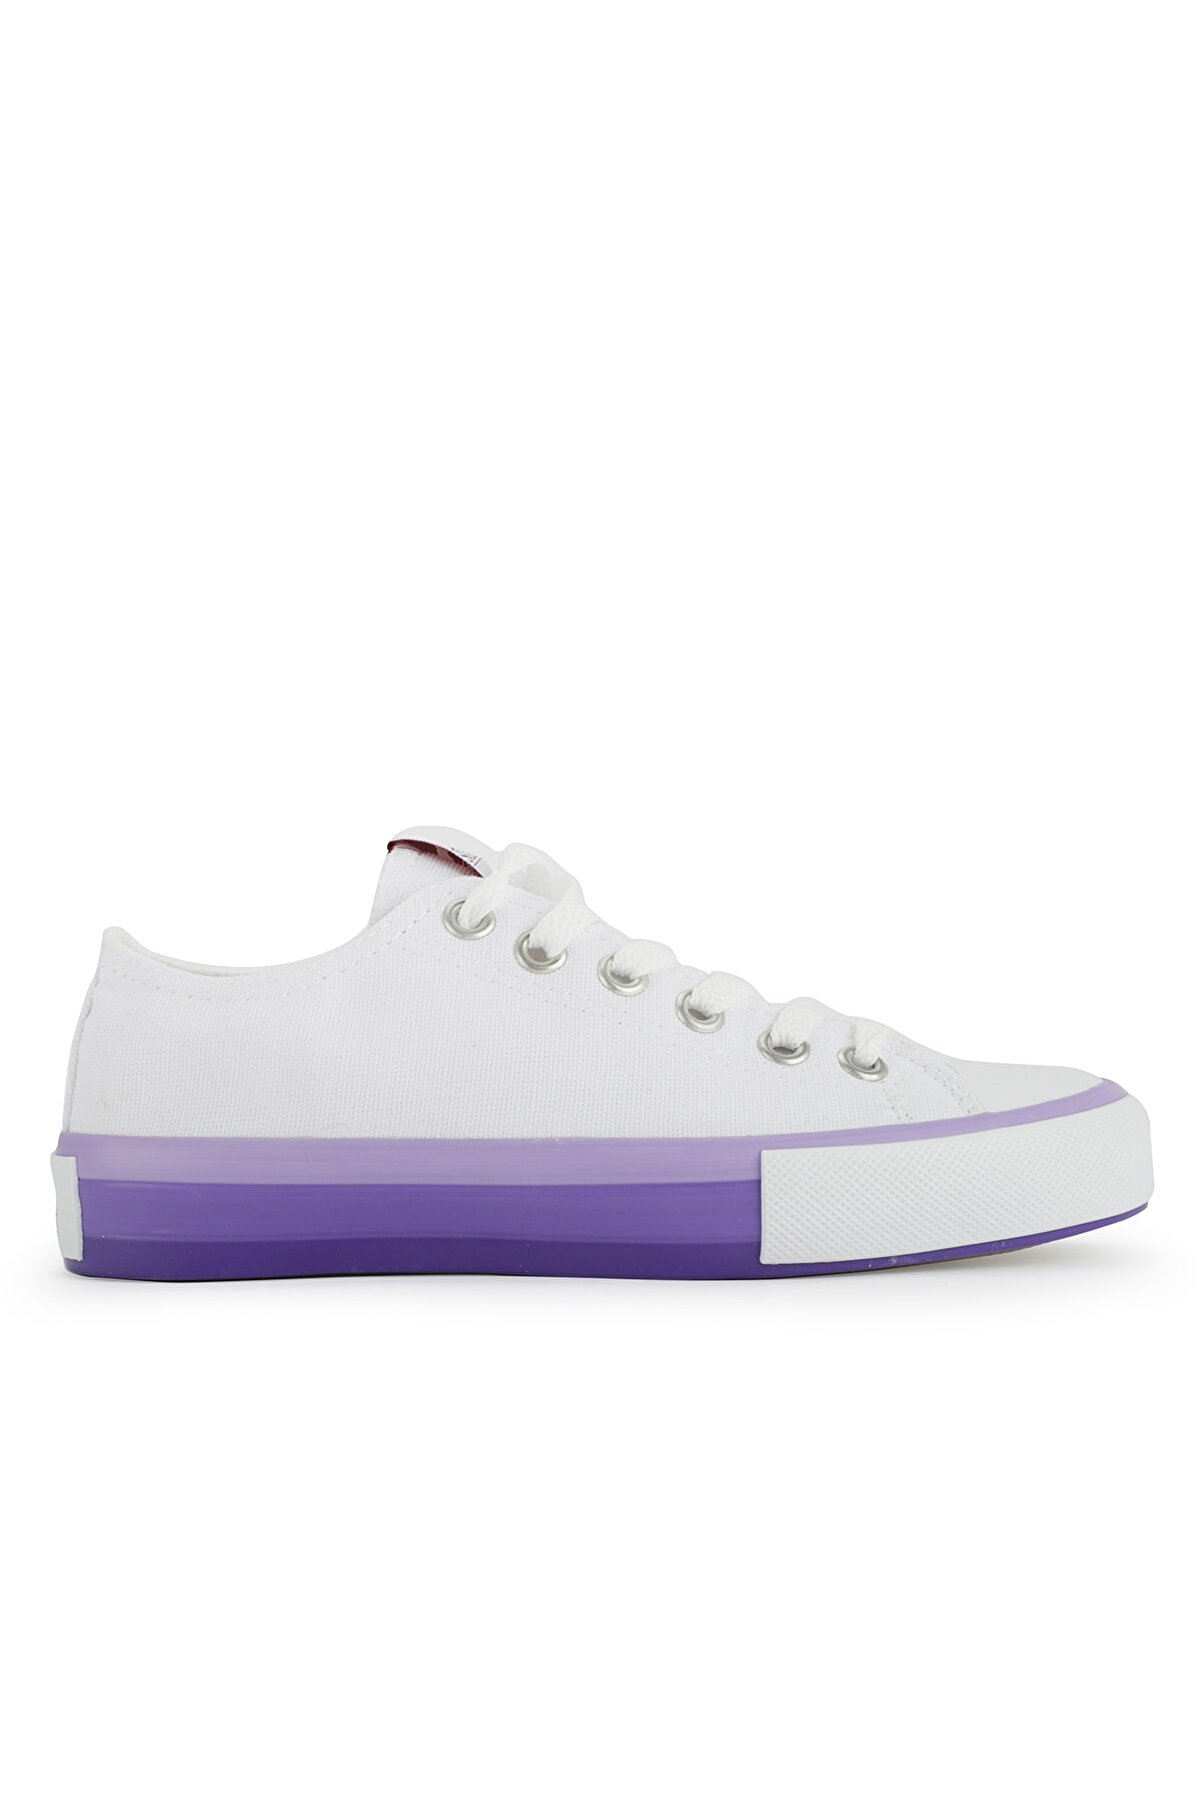 Slazenger Sead Sneaker Kadın Ayakkabı Beyaz